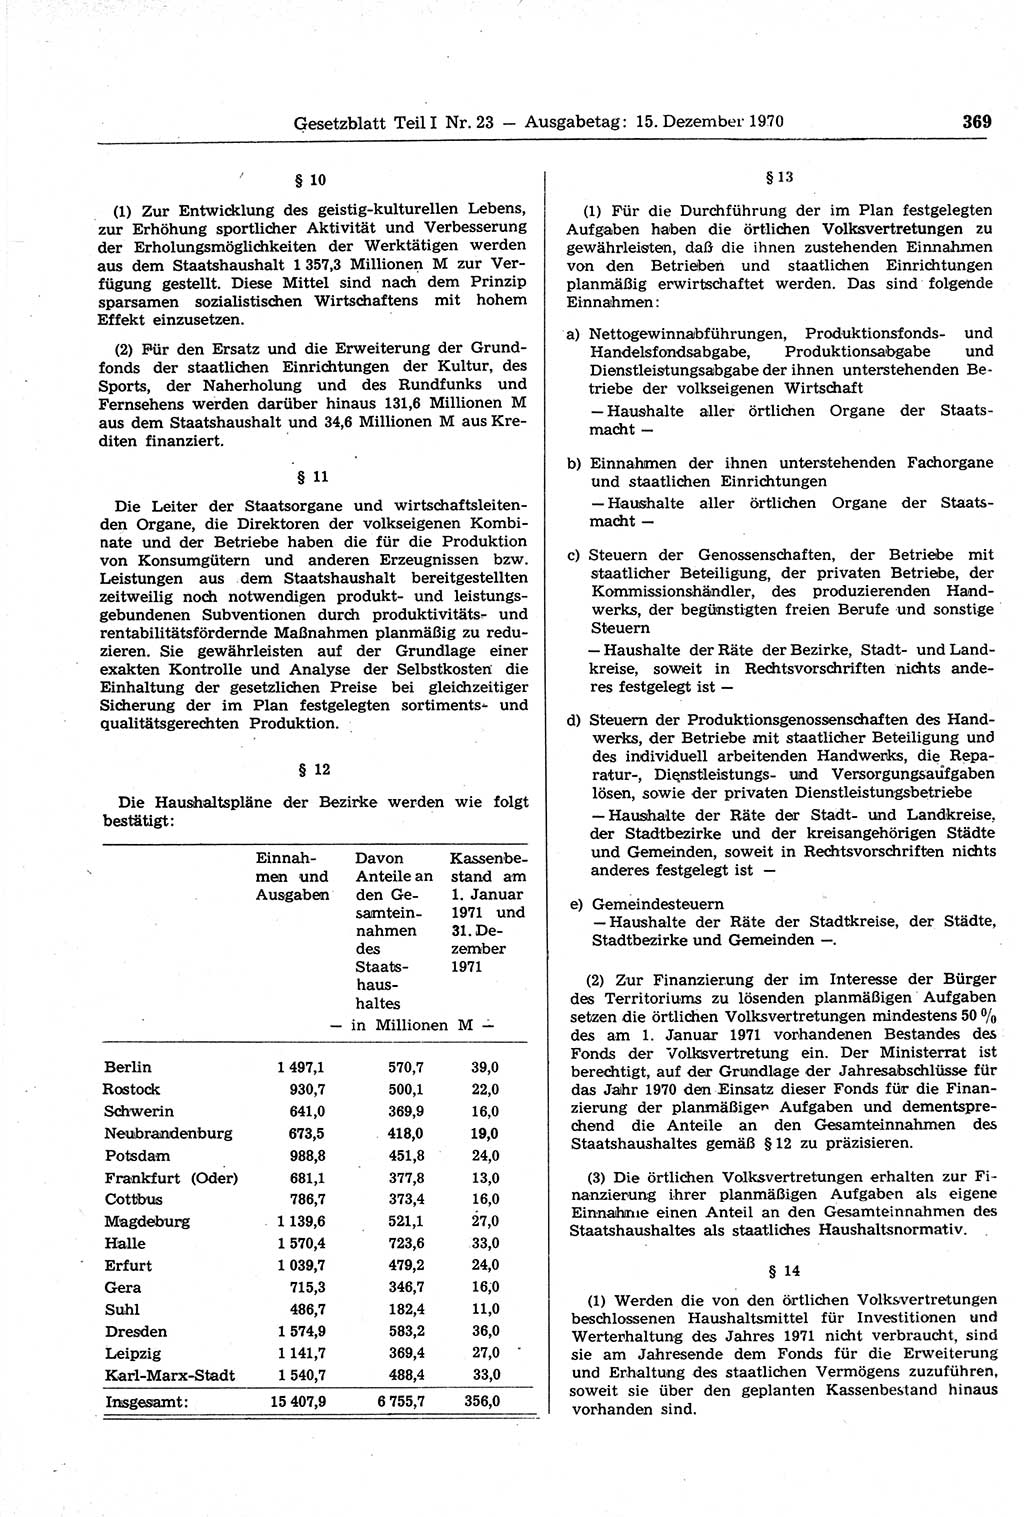 Gesetzblatt (GBl.) der Deutschen Demokratischen Republik (DDR) Teil Ⅰ 1970, Seite 369 (GBl. DDR Ⅰ 1970, S. 369)